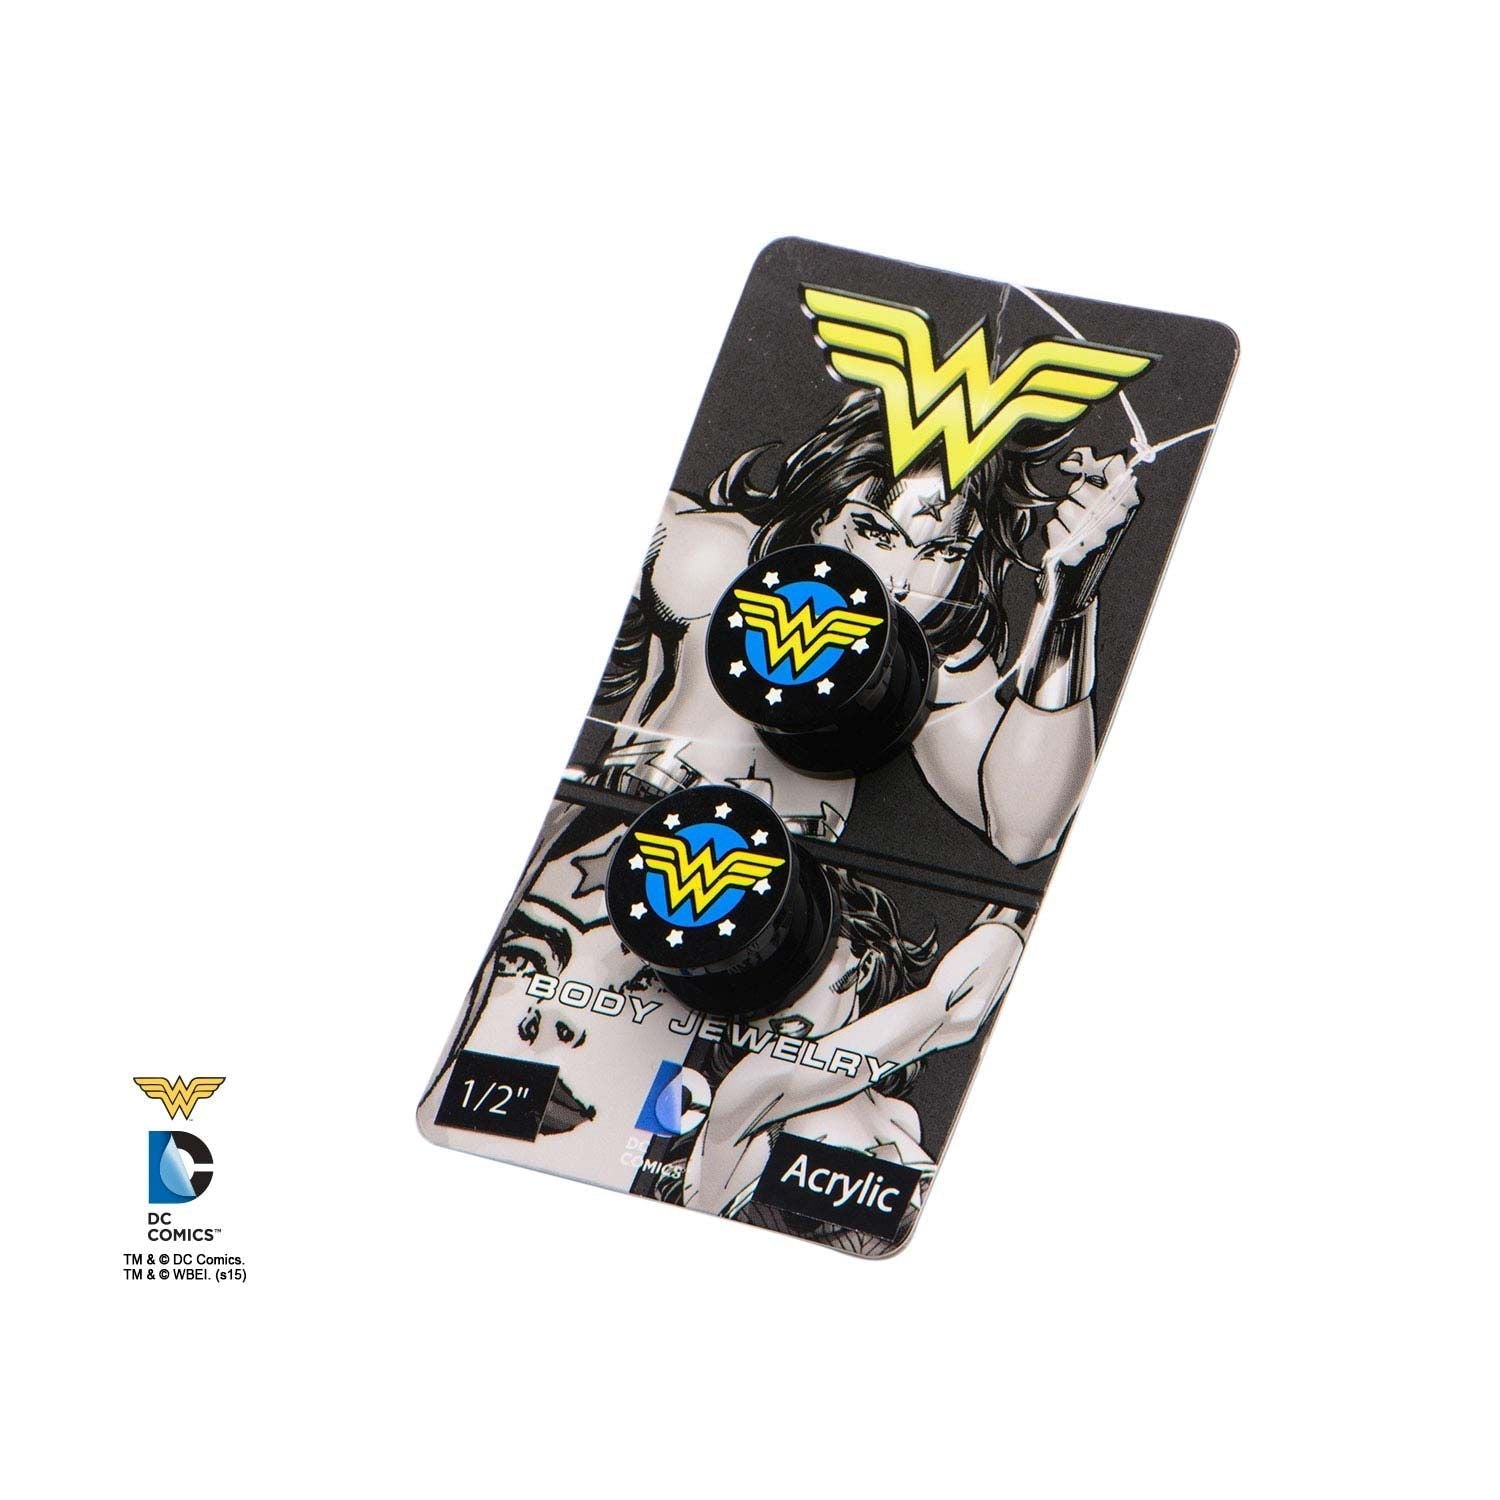 DC COMICS DC Comics Yellow Wonder Woman Logo Acrylic Screw Fit Plug -Rebel Bod-RebelBod